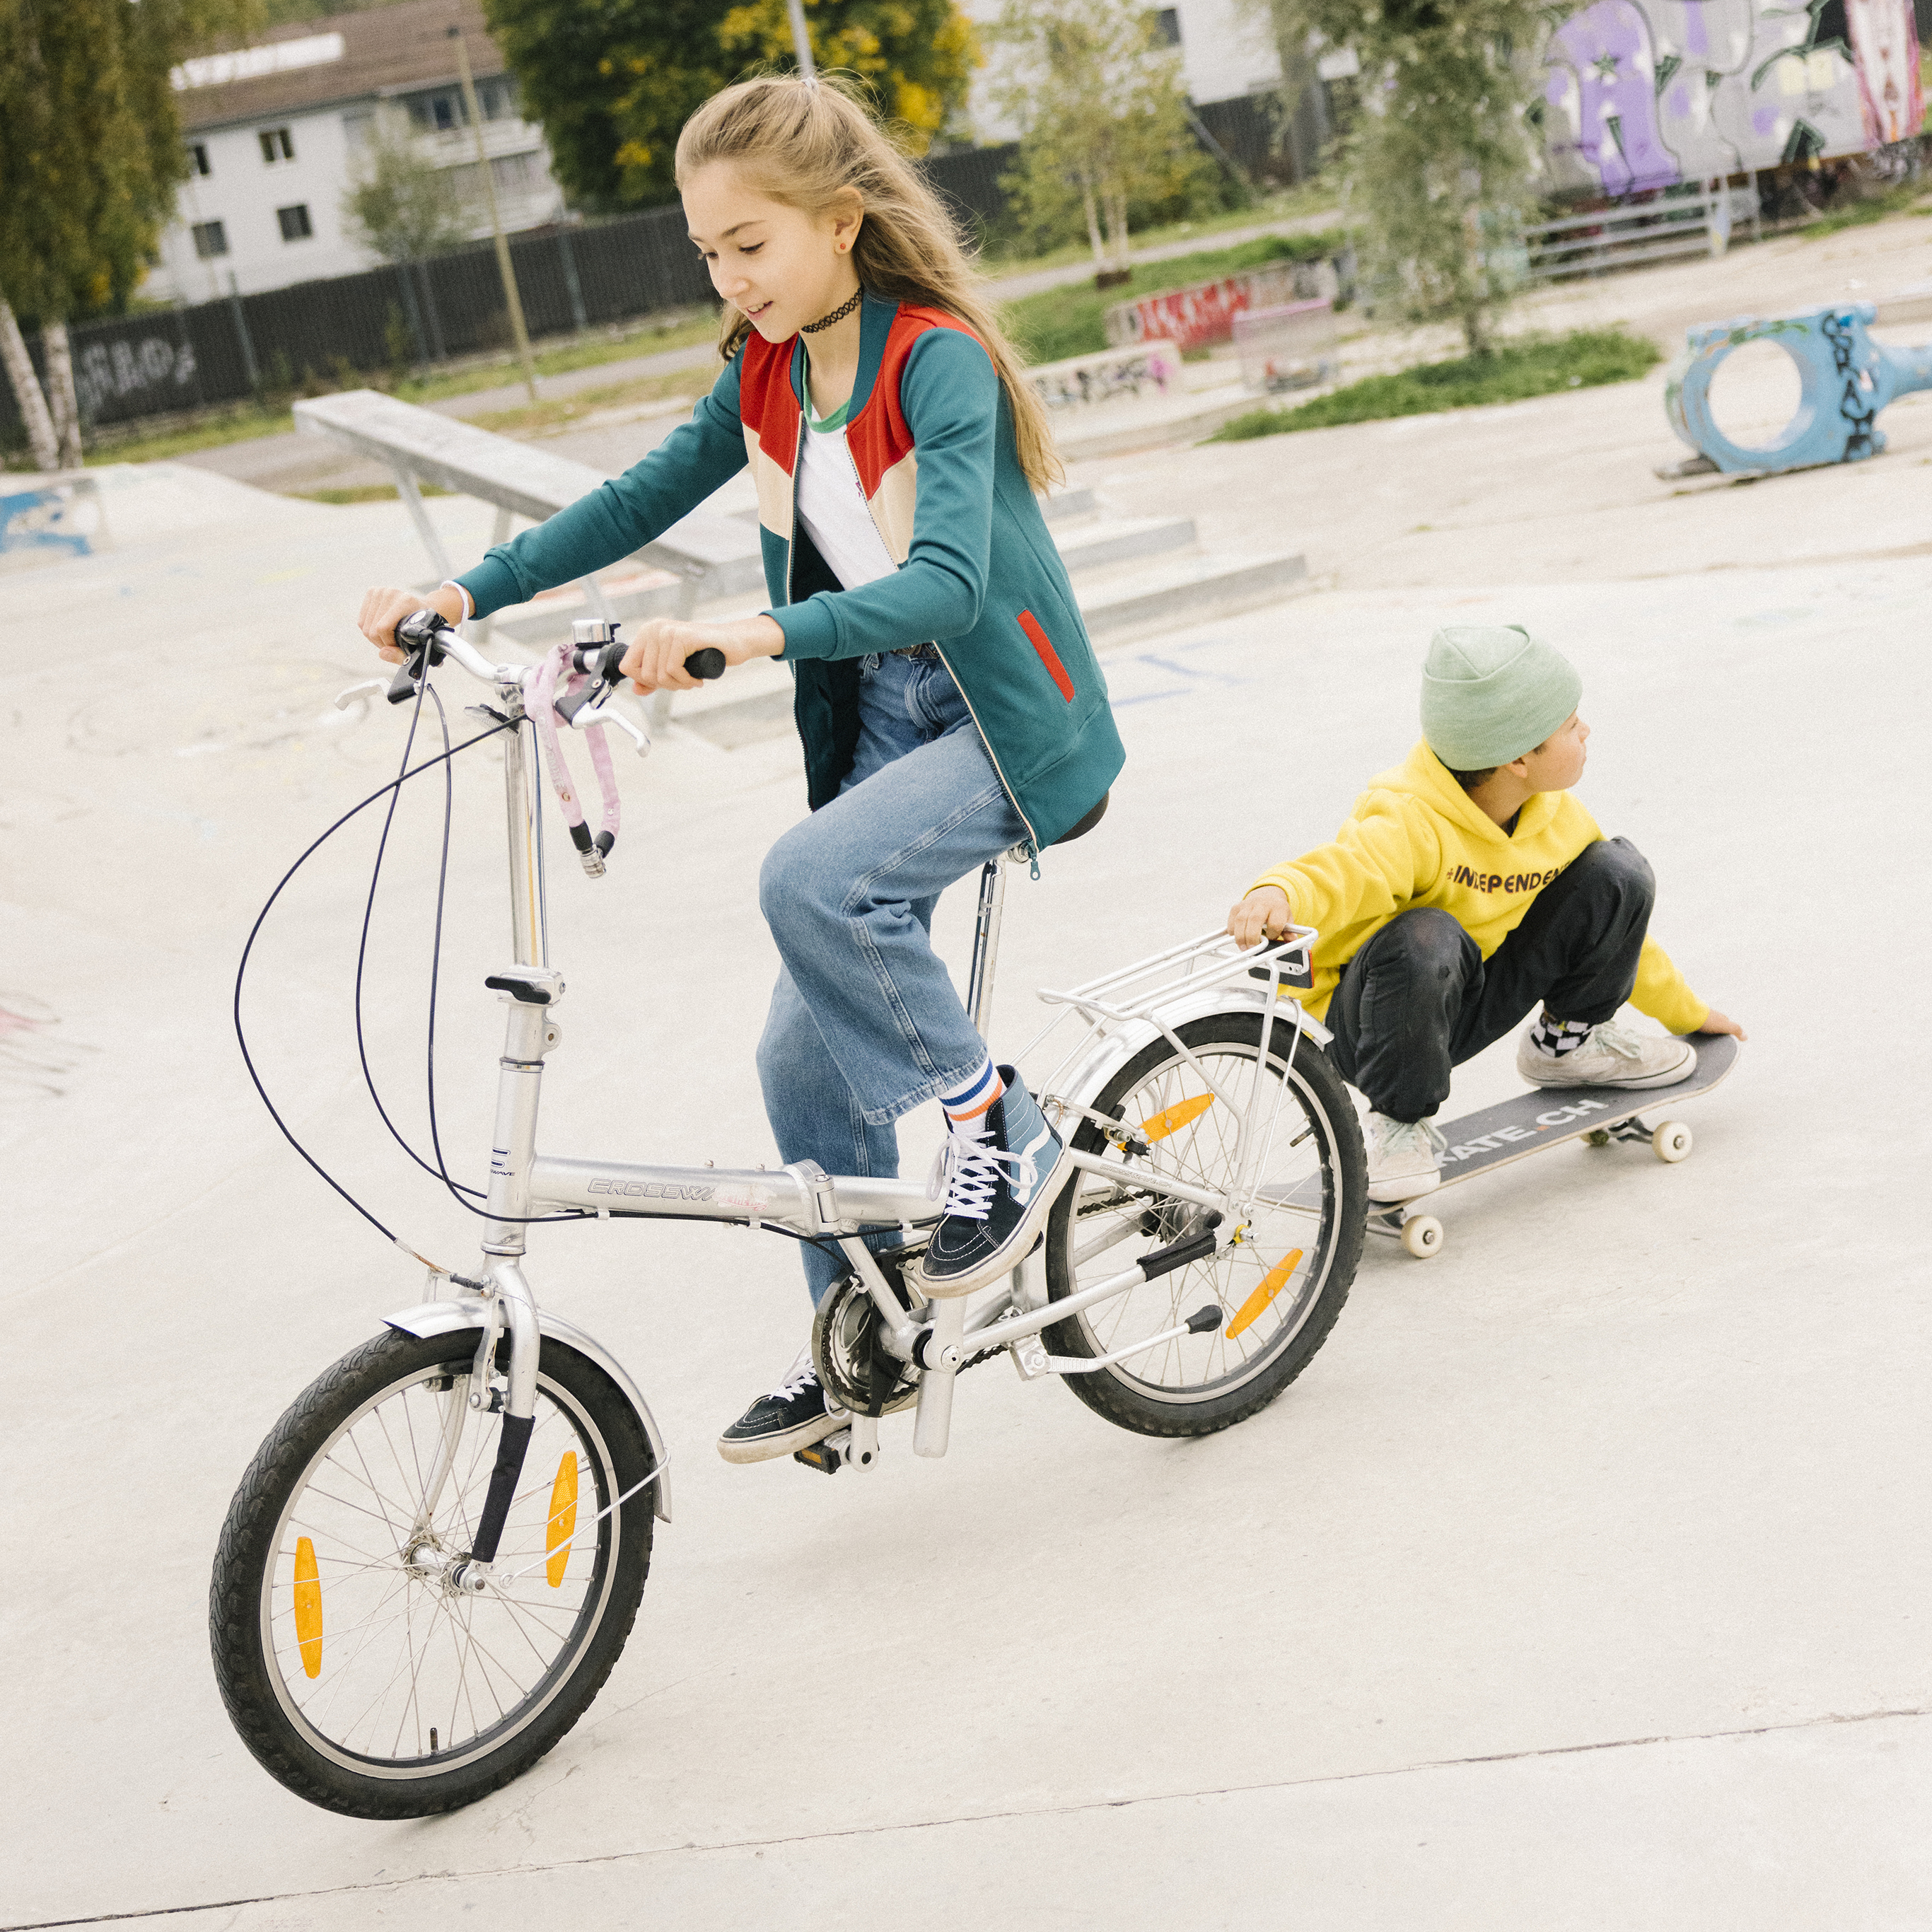 Una ragazza è in sella alla sua bicicletta, mentre un ragazzo accovacciato sul suo skateboard si aggrappa al portapacchi e guarda indietro.